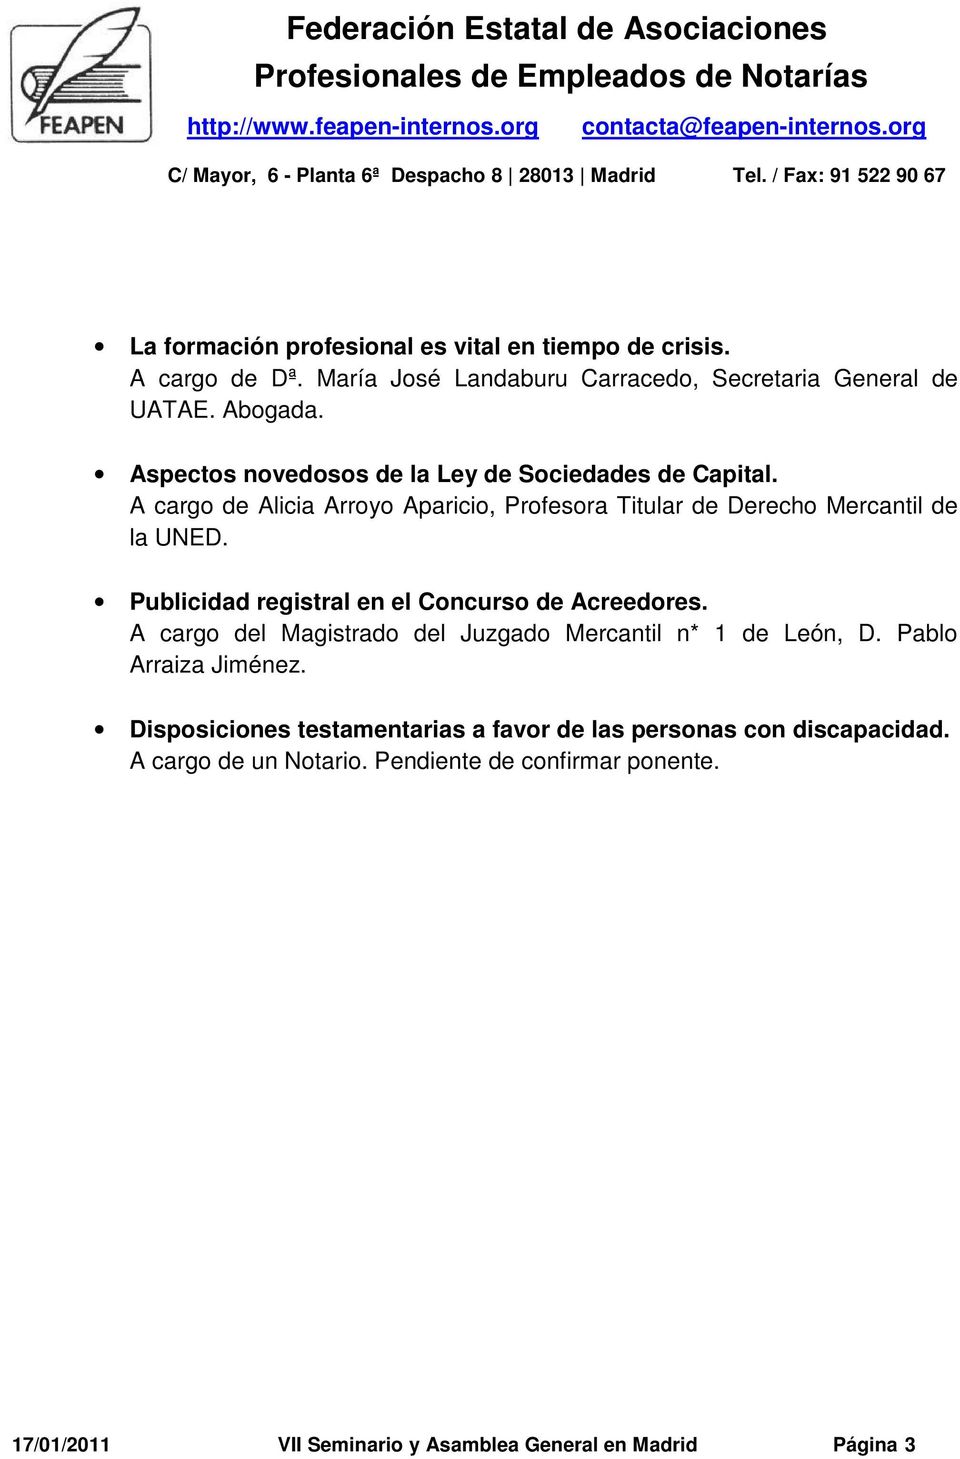 Publicidad registral en el Concurso de Acreedores. A cargo del Magistrado del Juzgado Mercantil n* 1 de León, D. Pablo Arraiza Jiménez.